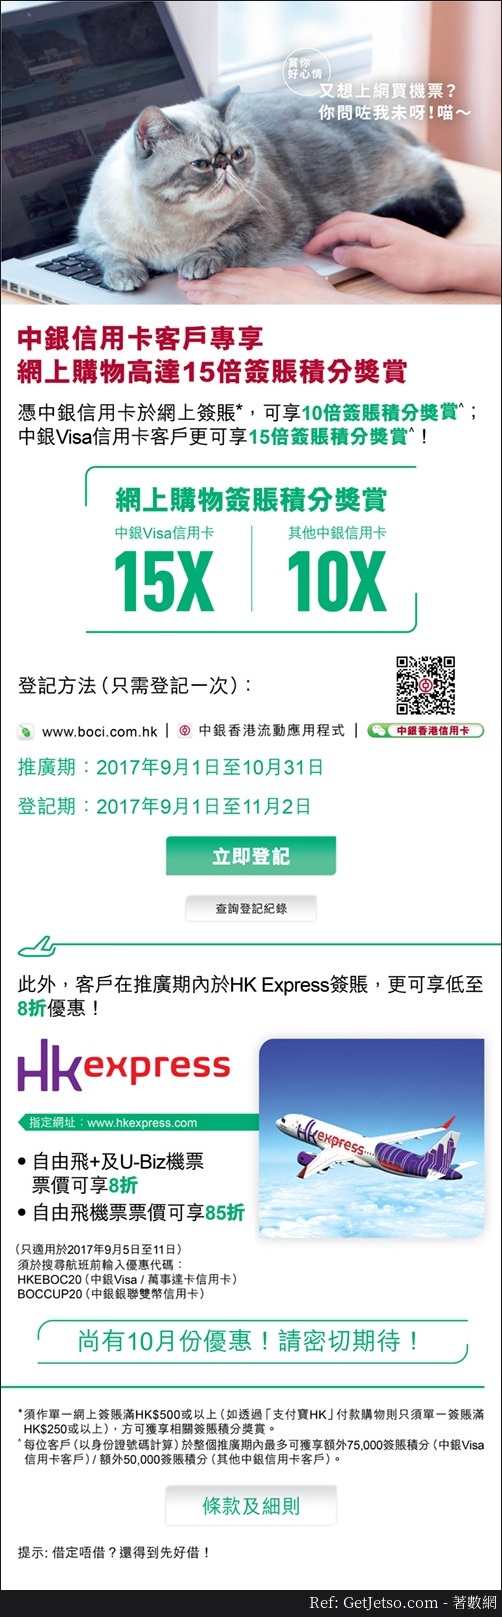 HK Express 機票低至8折優惠@中銀信用卡(至17年10月31日)圖片1